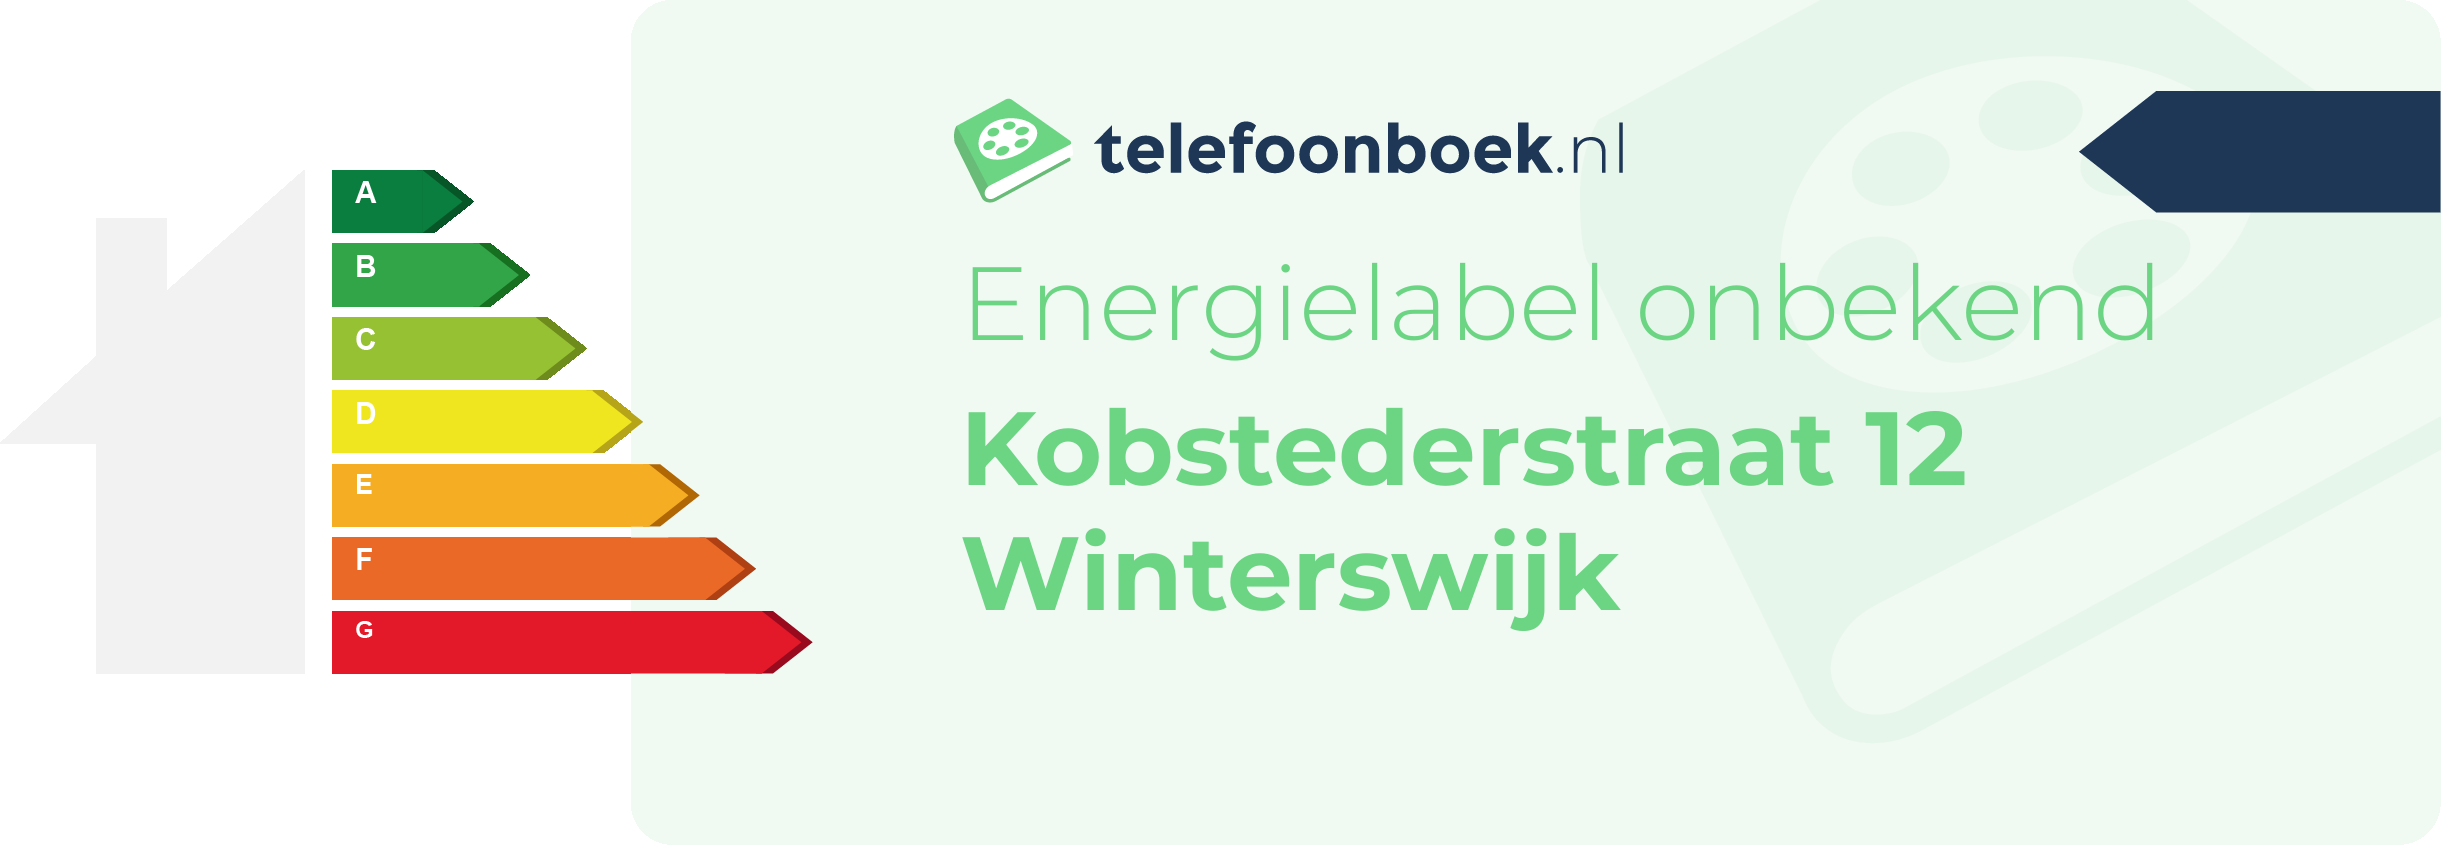 Energielabel Kobstederstraat 12 Winterswijk